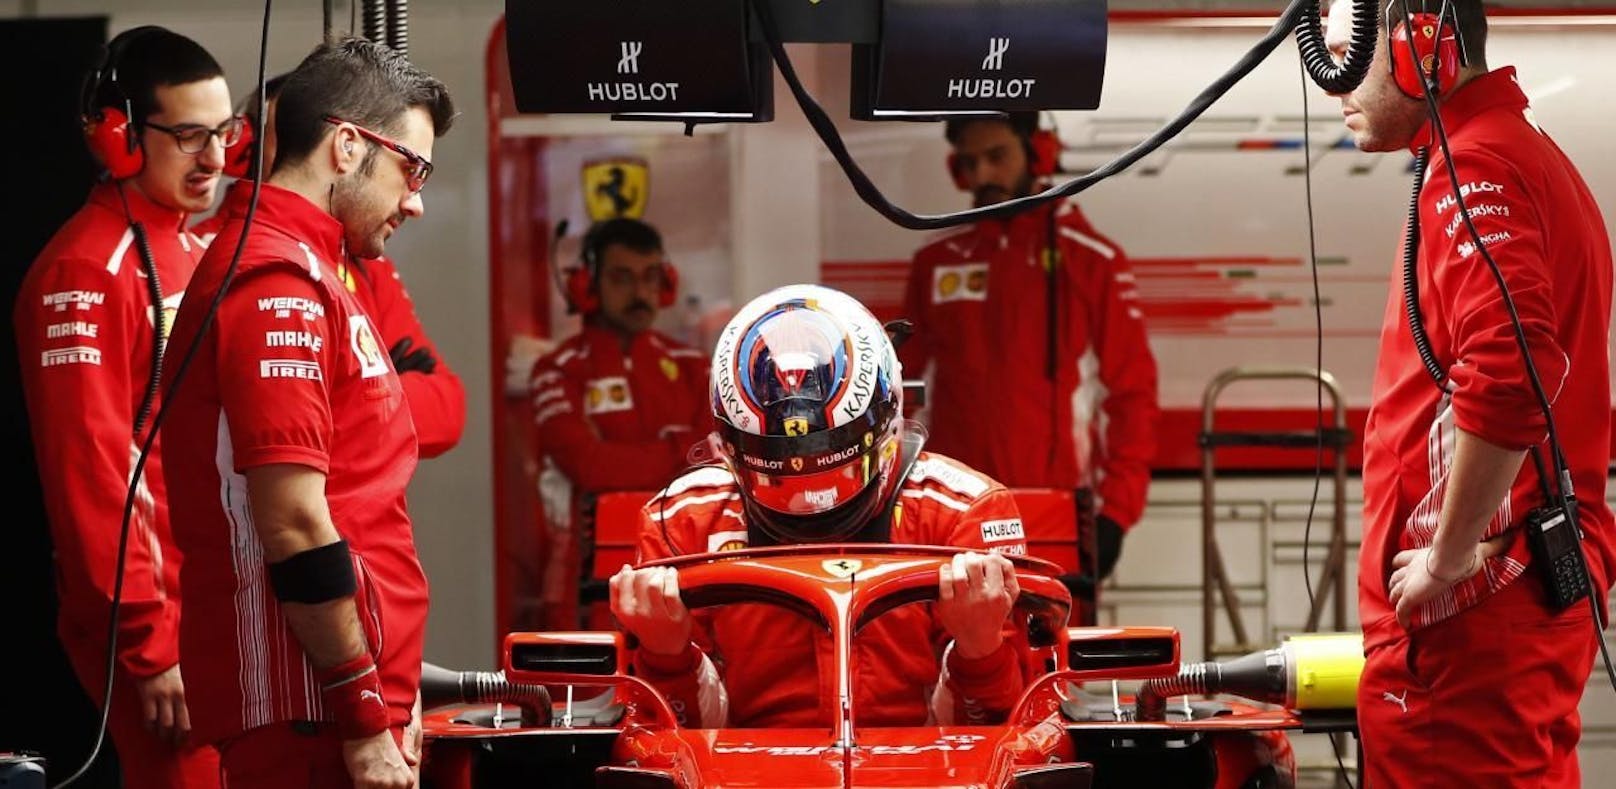 Fix! Räikkönen steigt aus Ferrari & hat neues Team